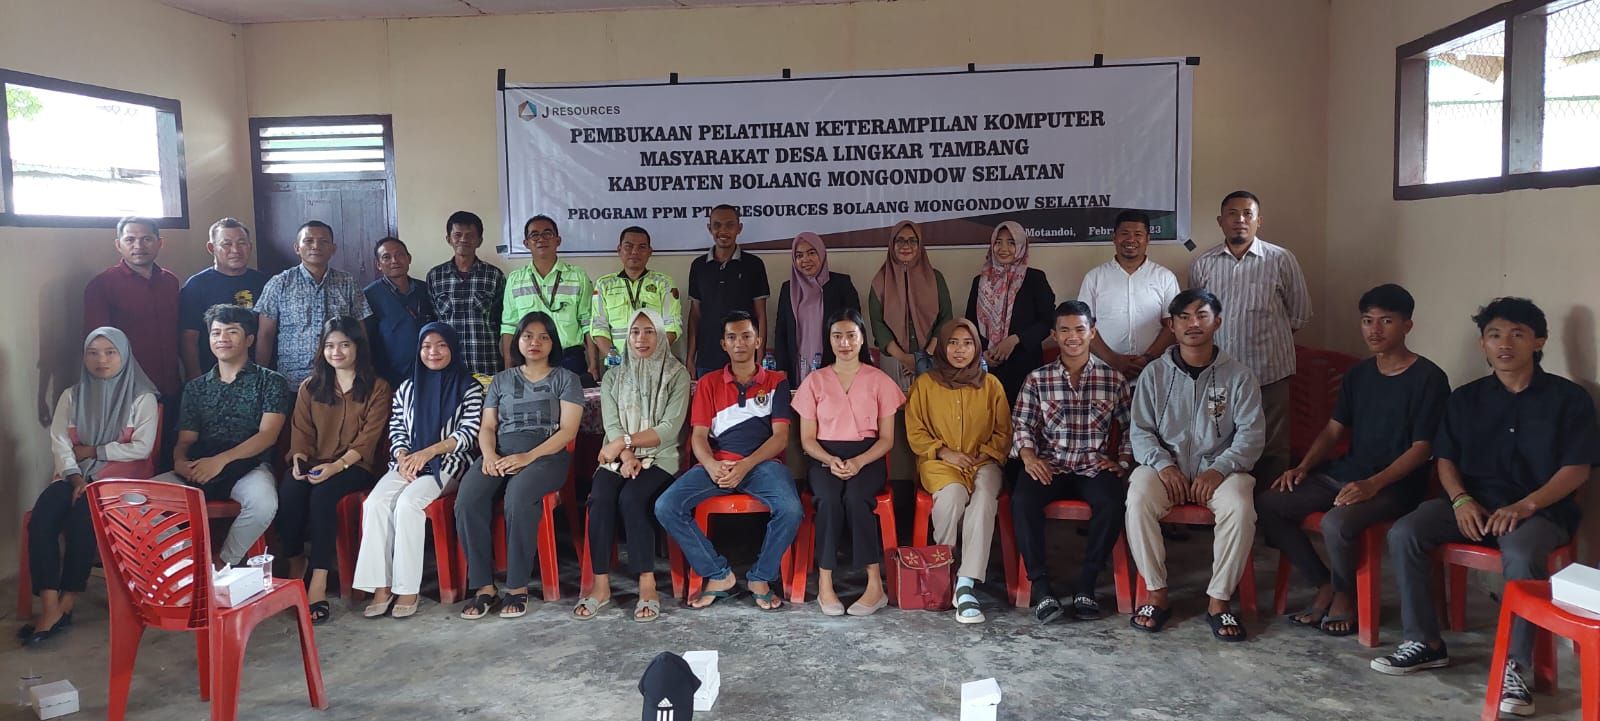 Foto Bersama Peserta Pelatihan Komputer Masyarakat Lingkar Tambang di Bolsel dan Jajaran PT. JRBM